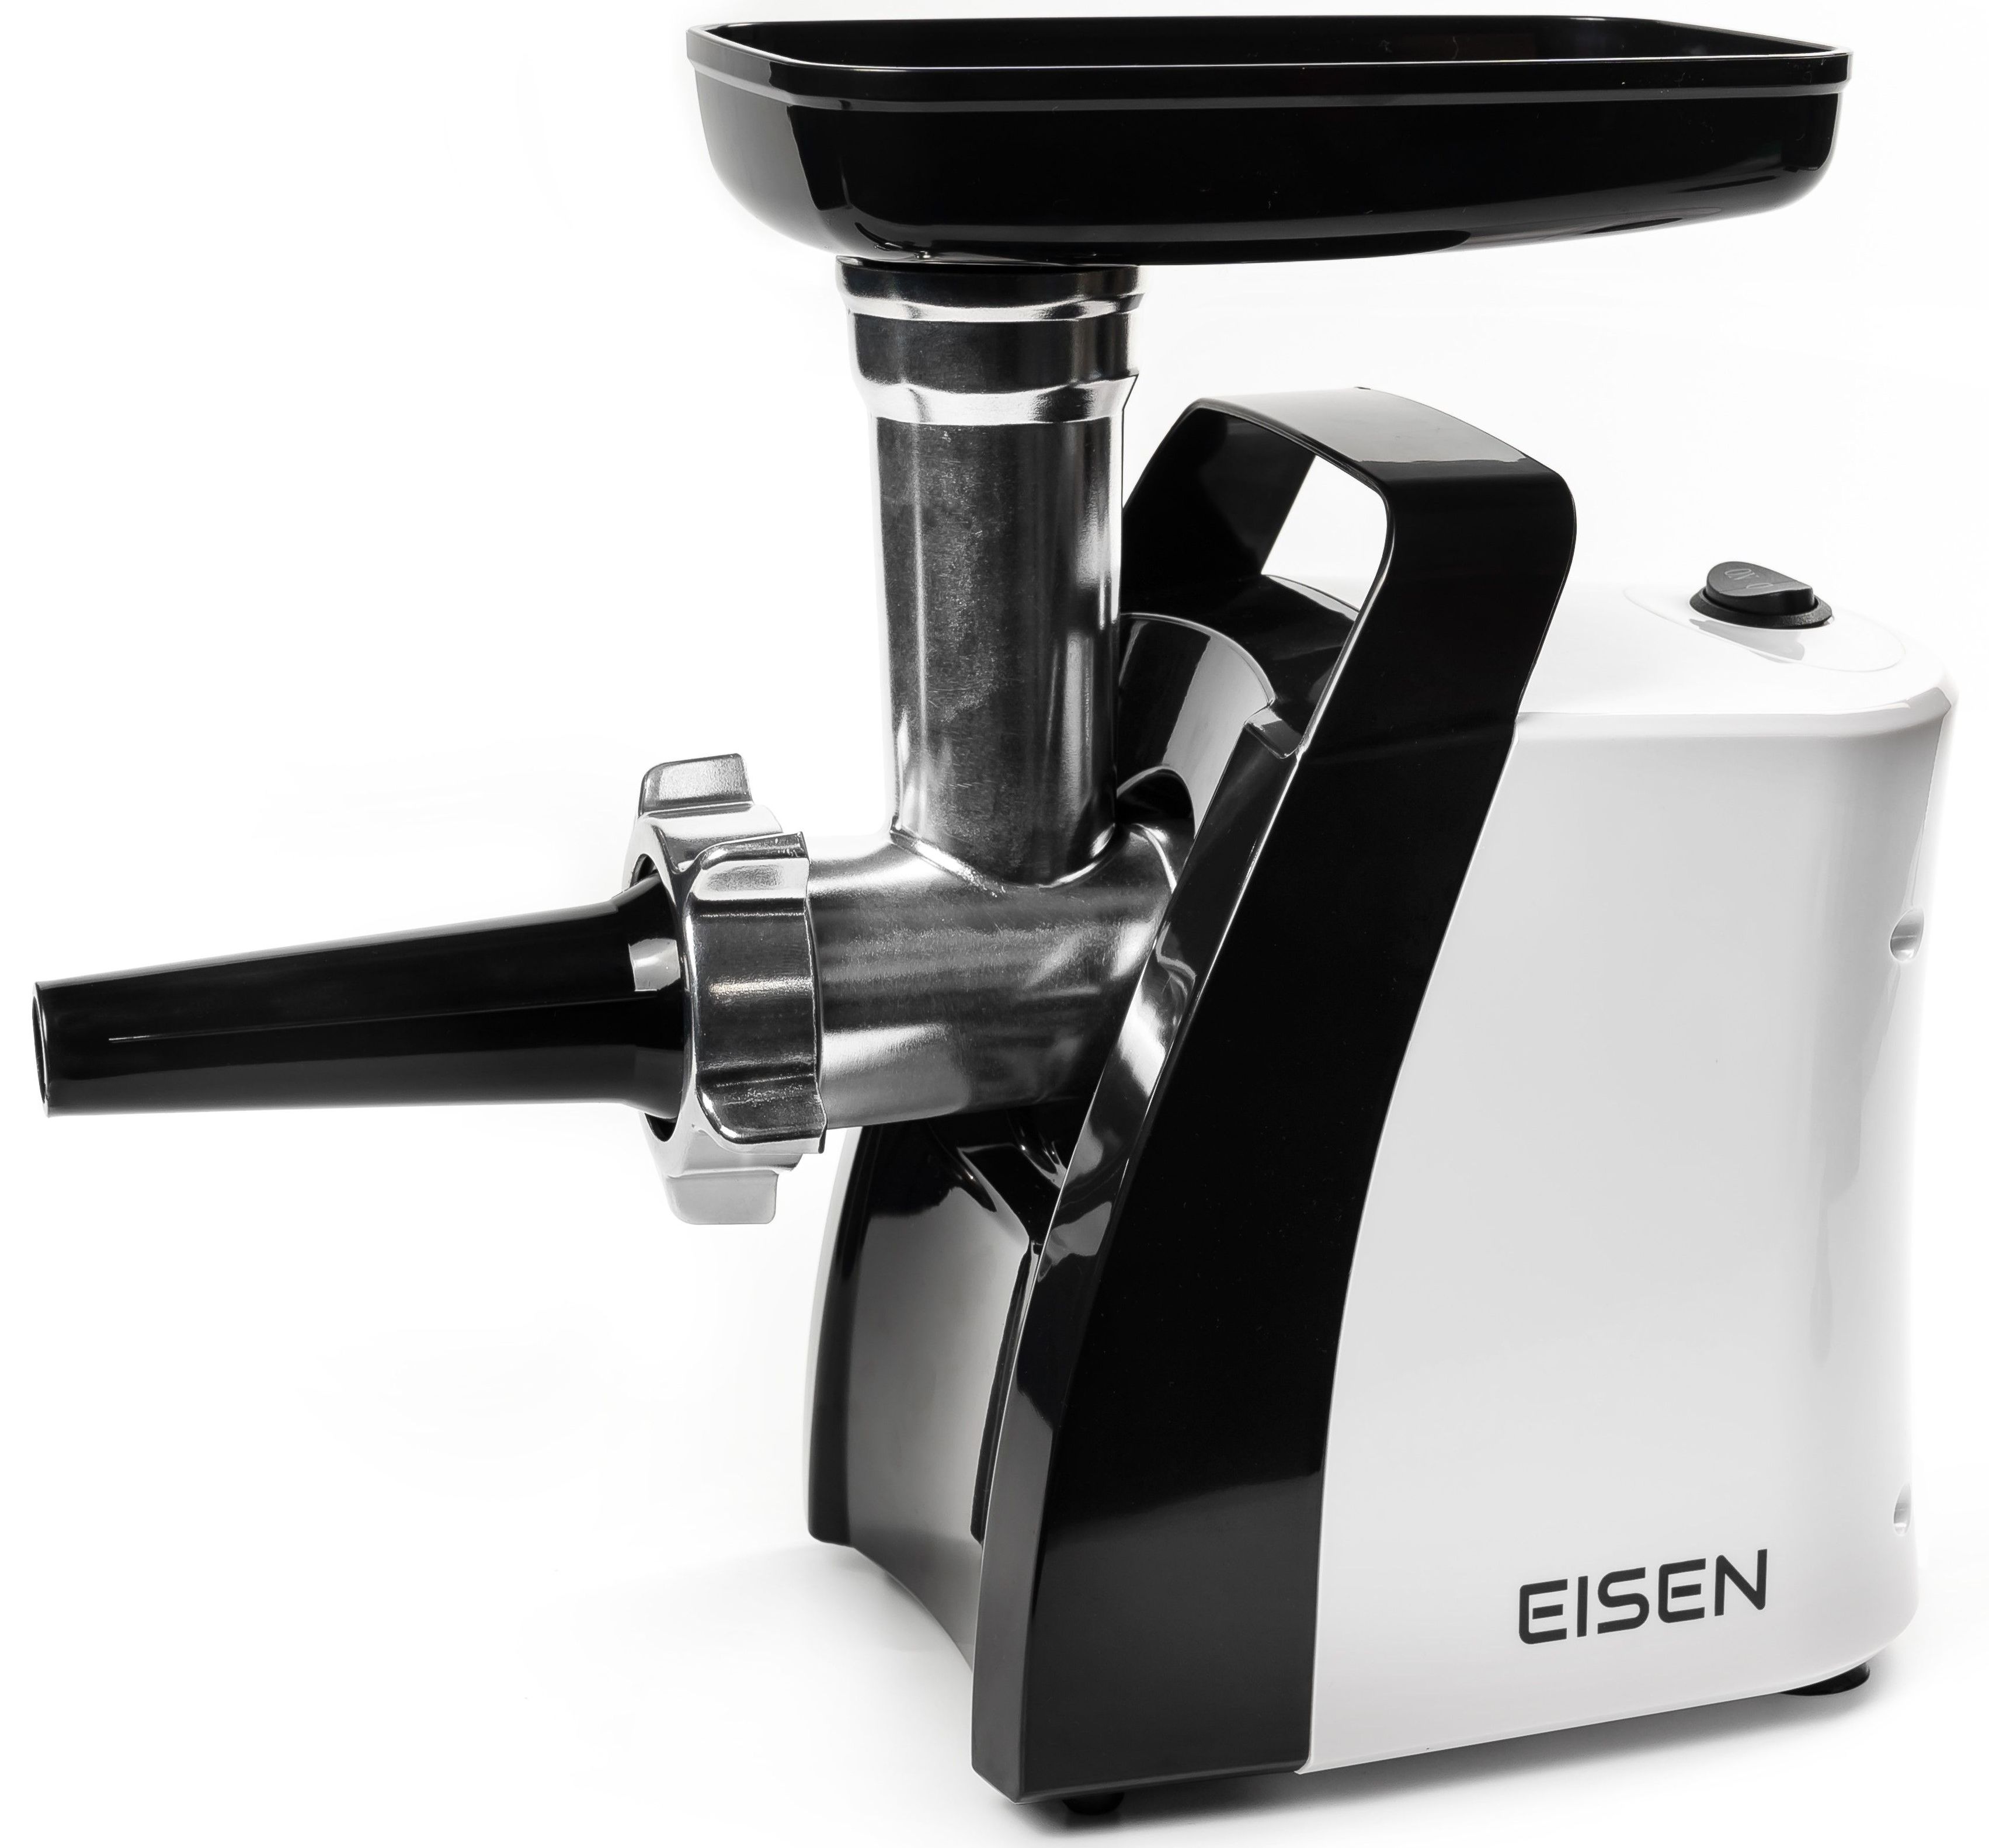 Электромясорубка Eisen EMG-006S отзывы - изображения 5